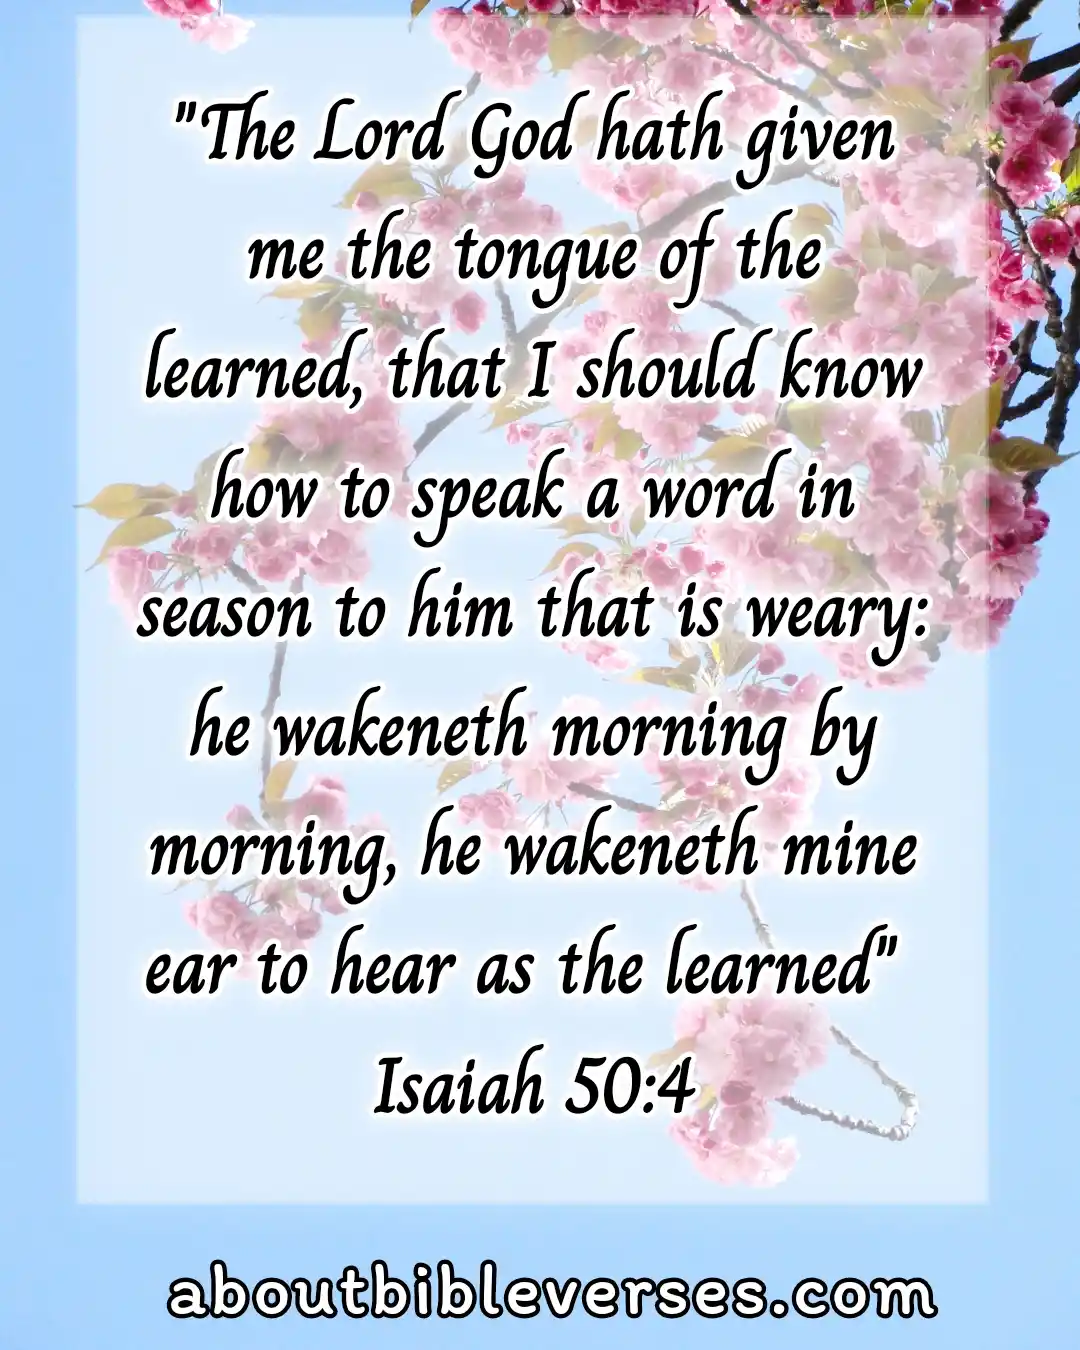 Todaybible verse (Isaiah 50:4)